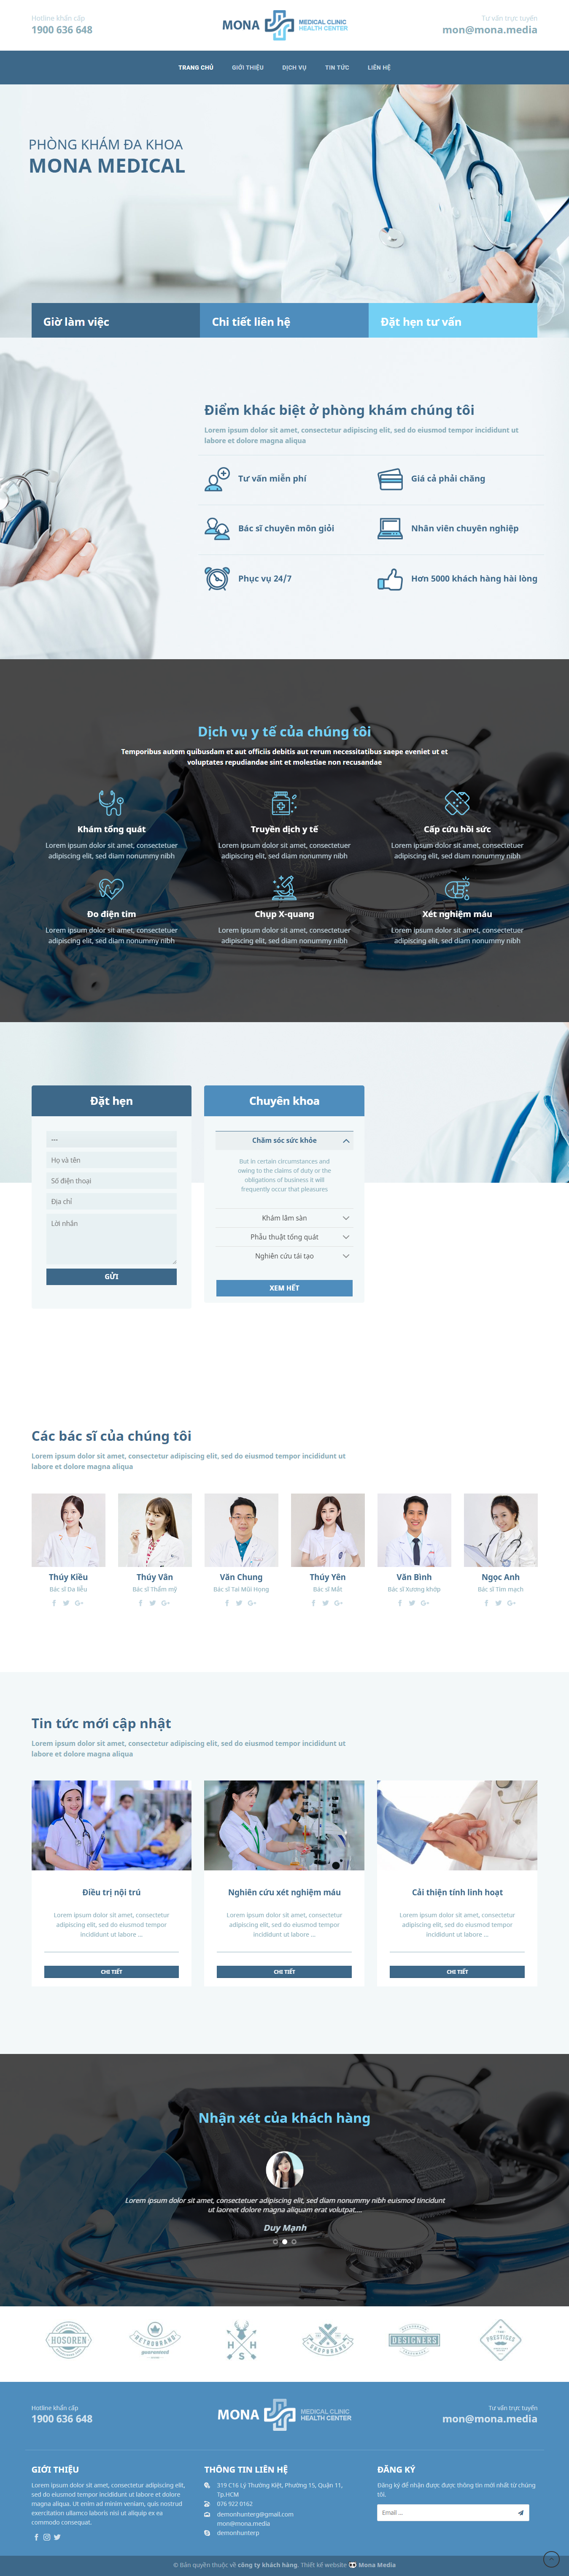 Mẫu website về bệnh viện và phòng khám theo xu hướng mới